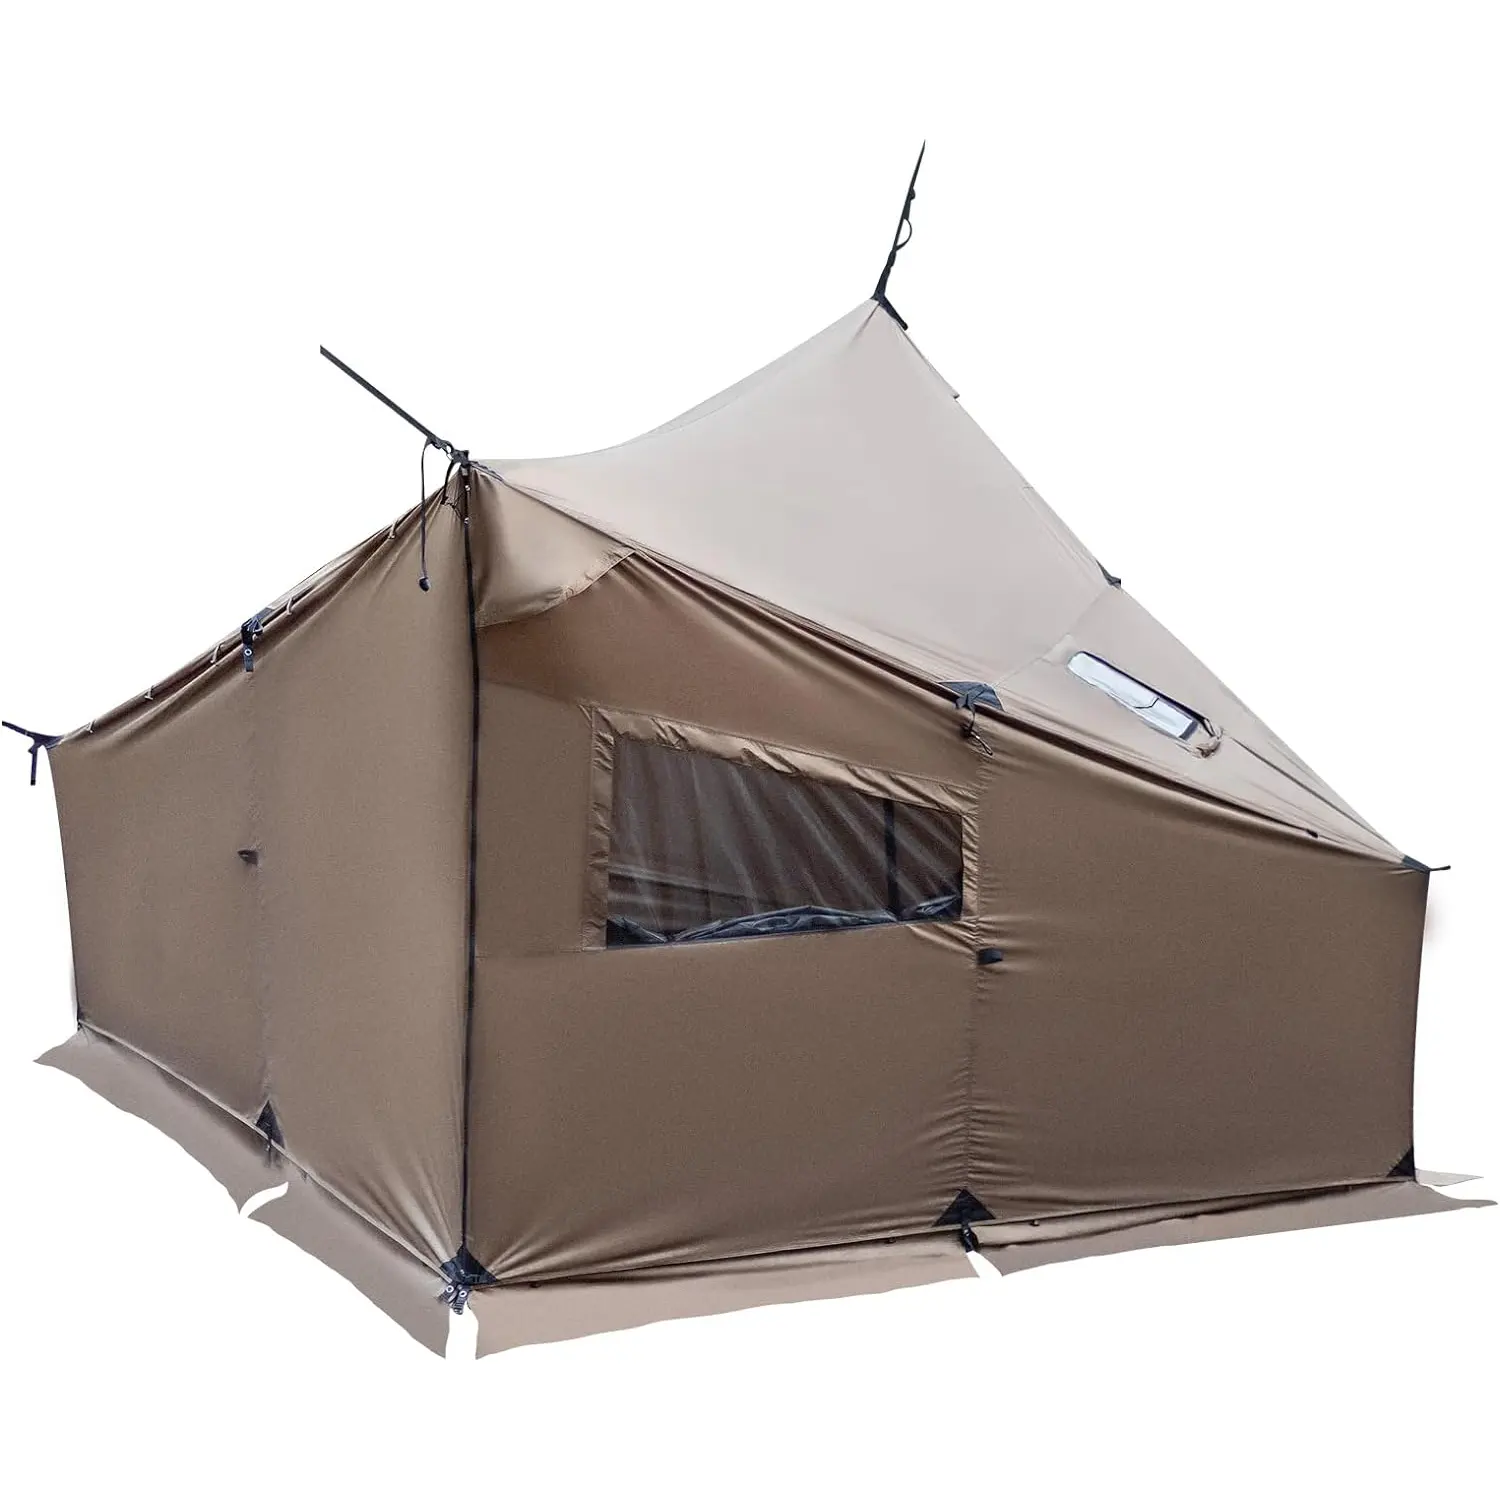 대형 넓은 4 인용 텐트 스토브 잭 방풍 방수 텐트 나무 난로 Bushcraft 캠핑 여행 트럭 가족